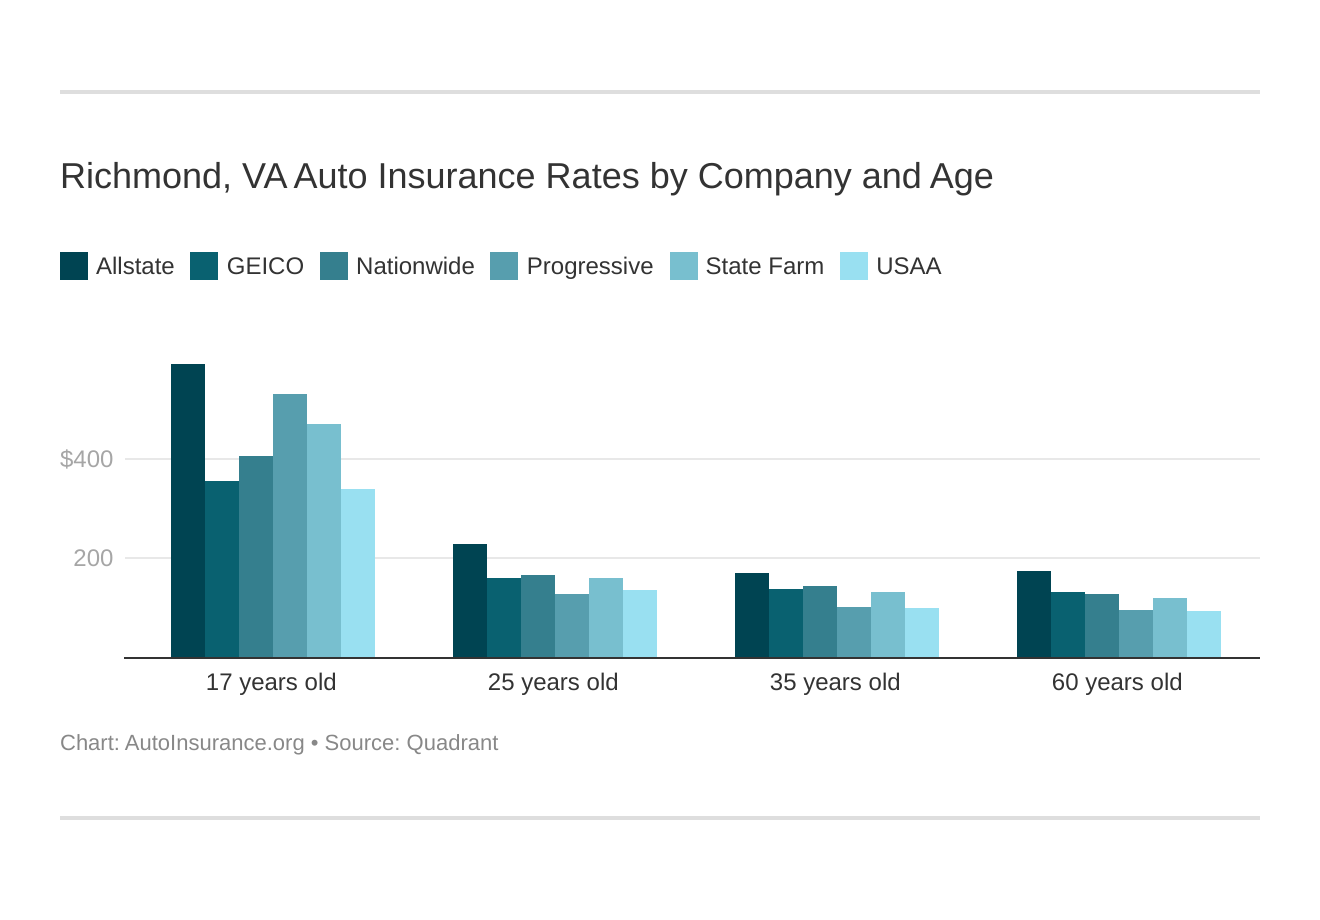 Richmond, VA Auto Insurance Rates by Company and Age